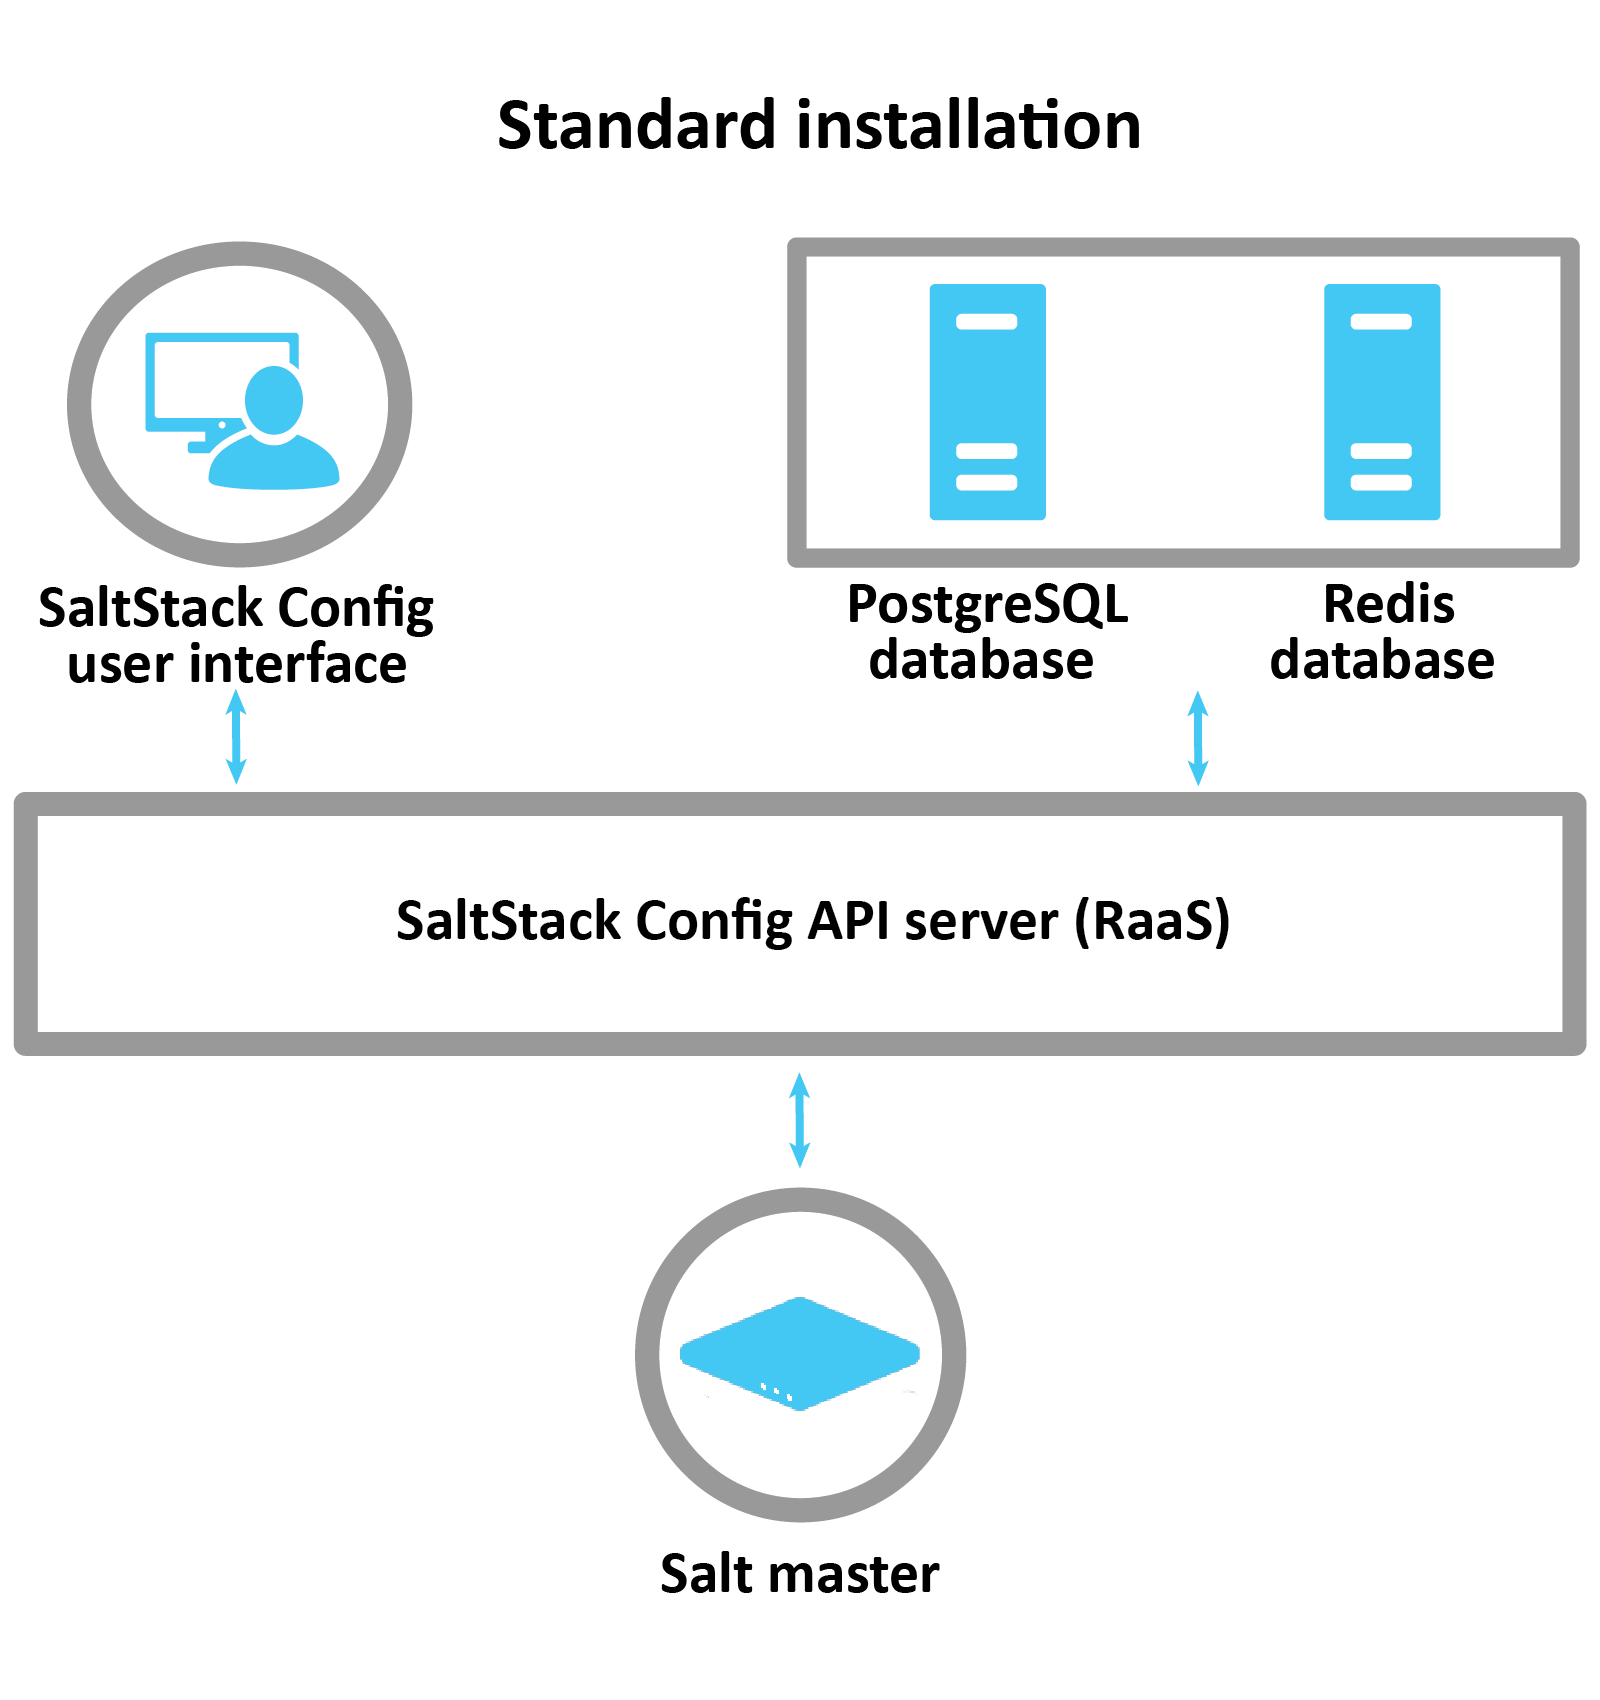 Diagramm zur Erläuterung einer Standardinstallation: Die SaltStack Config-Benutzeroberfläche, Postgres- und Redis-Datenbank kommunizieren mit dem RaaS-Server, der den Salt-Master konfiguriert und steuert.